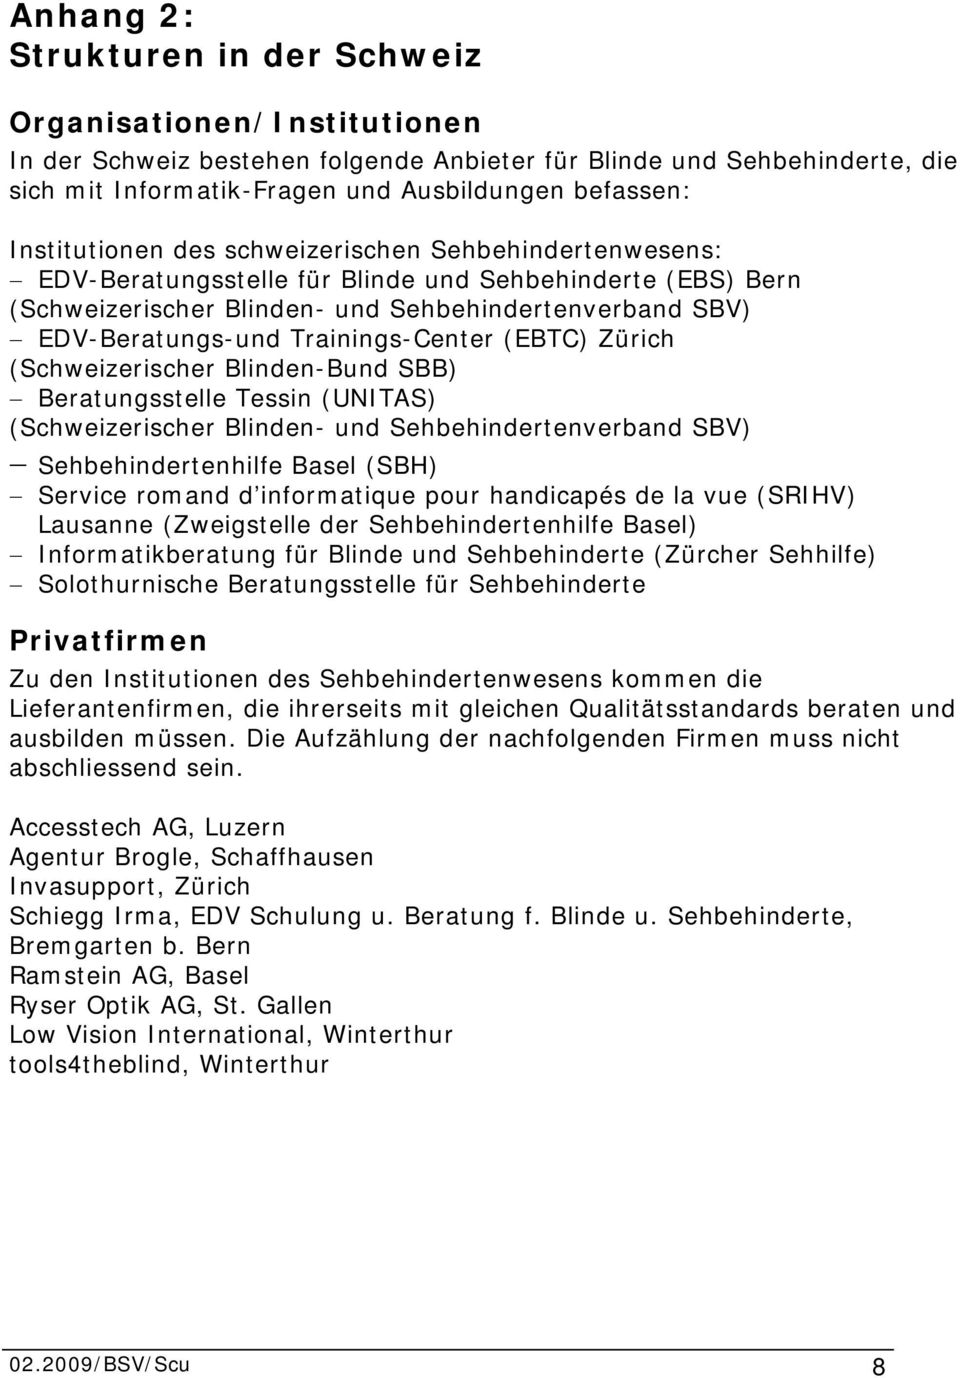 Trainings-Center (EBTC) Zürich (Schweizerischer Blinden-Bund SBB) Beratungsstelle Tessin (UNITAS) (Schweizerischer Blinden- und Sehbehindertenverband SBV) Sehbehindertenhilfe Basel (SBH) Service